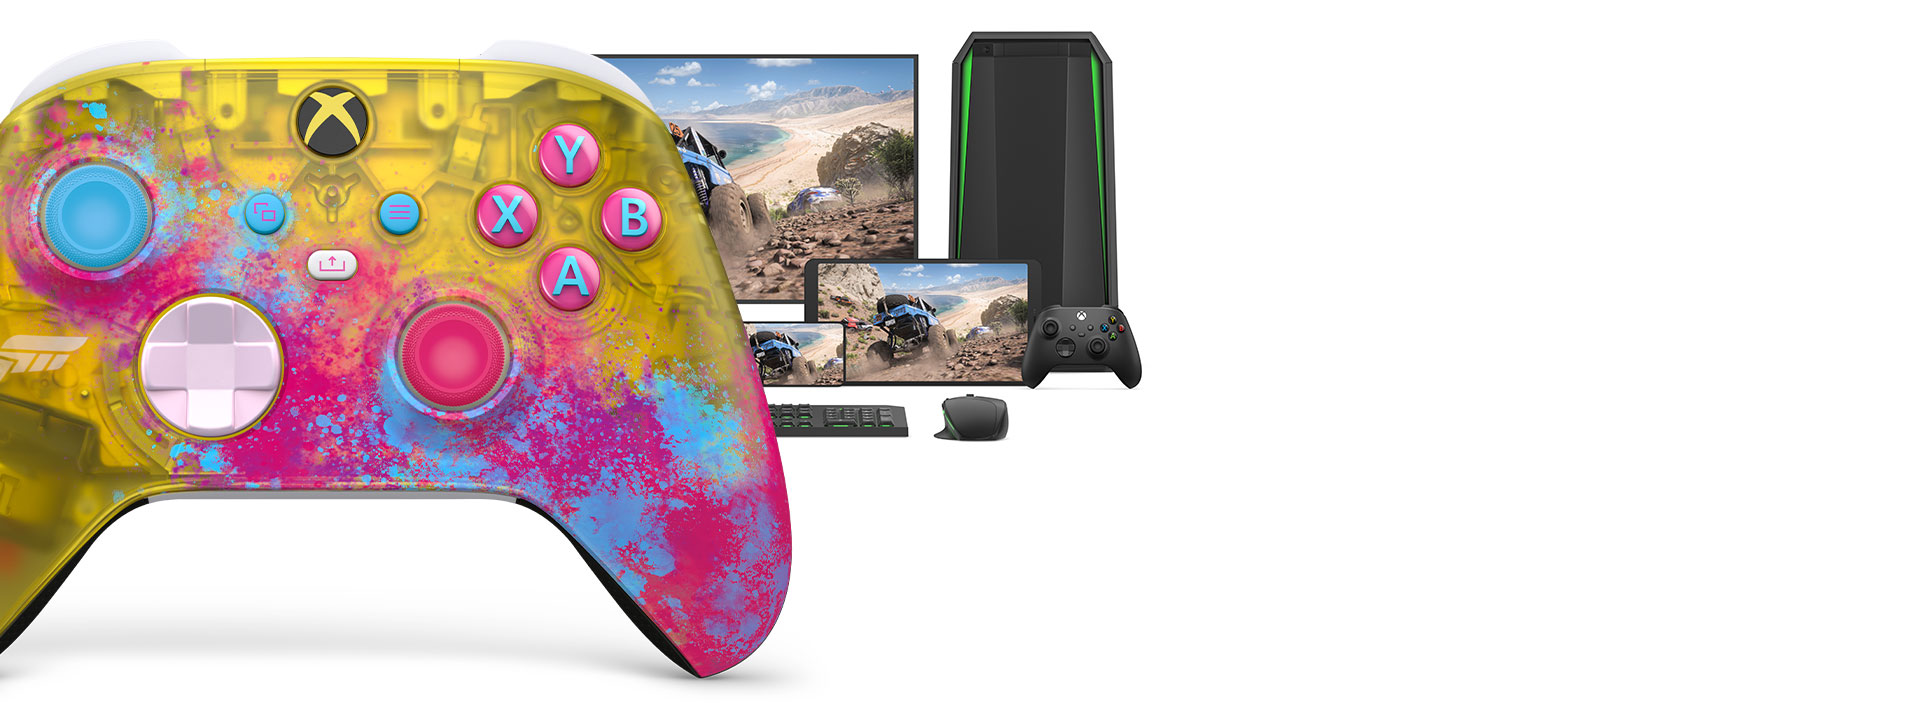 Forza Horizon 5 vezeték nélküli Xbox-kontroller számítógéppel, televízióval és Xbox Series S konzollal